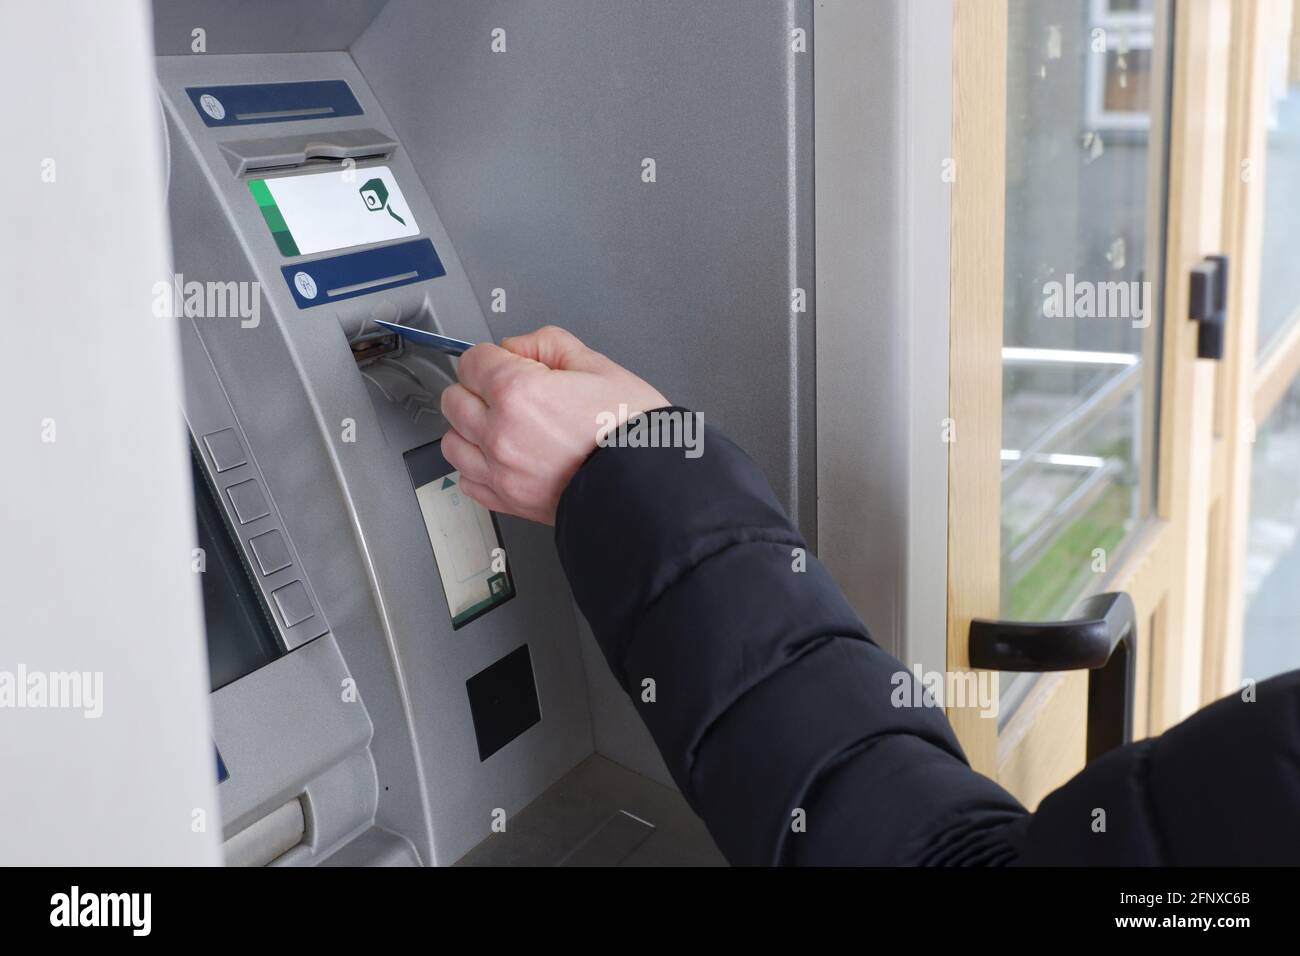 La mano di un uomo inserisce una carta di credito in un bancomat. Foto Stock